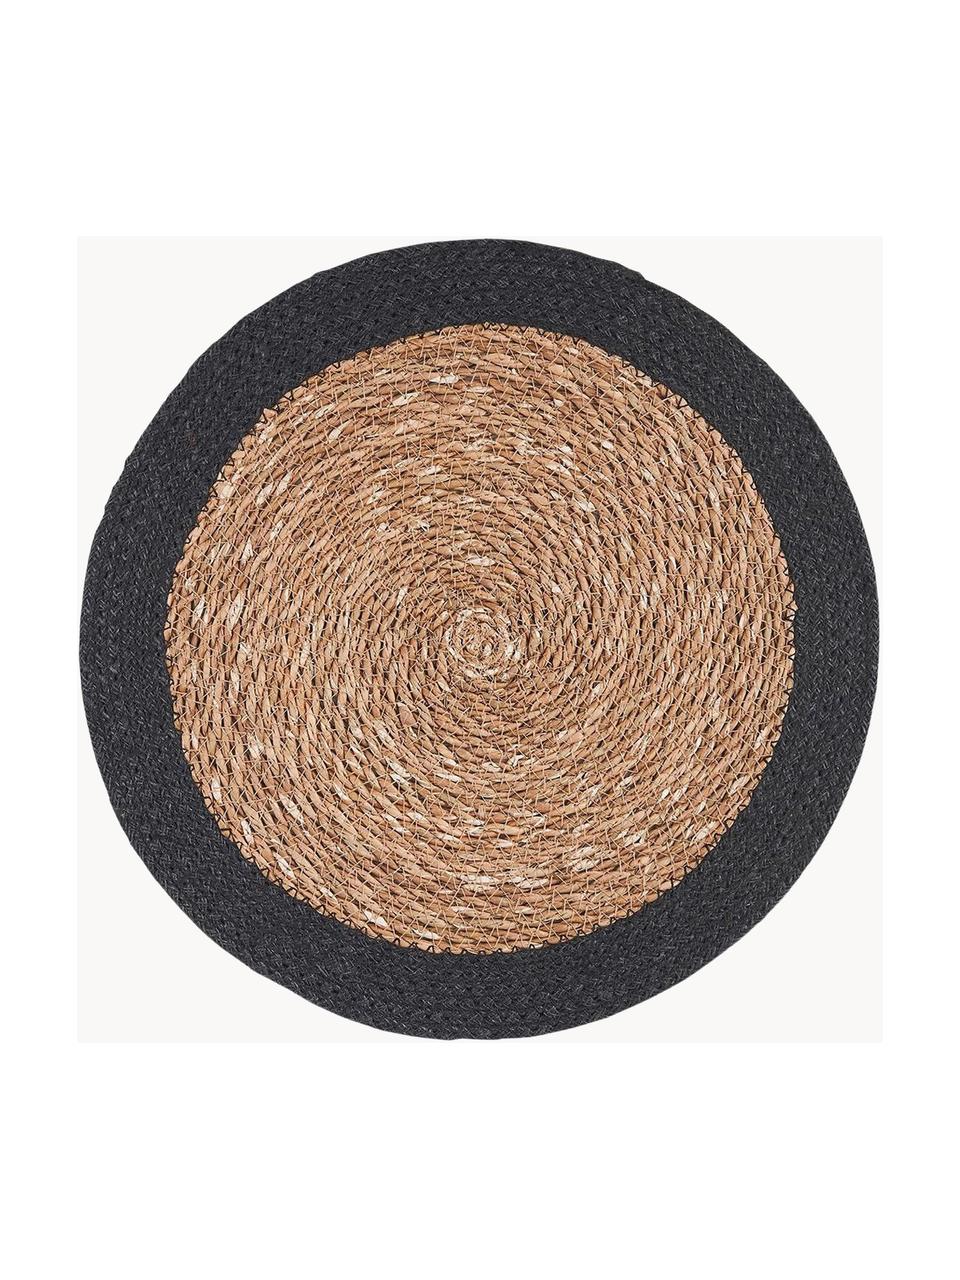 Okrúhle prestieranie z morskej trávy Sauvage, 2 ks, Morská tráva, juta, Béžová, čierna, Ø 38 cm